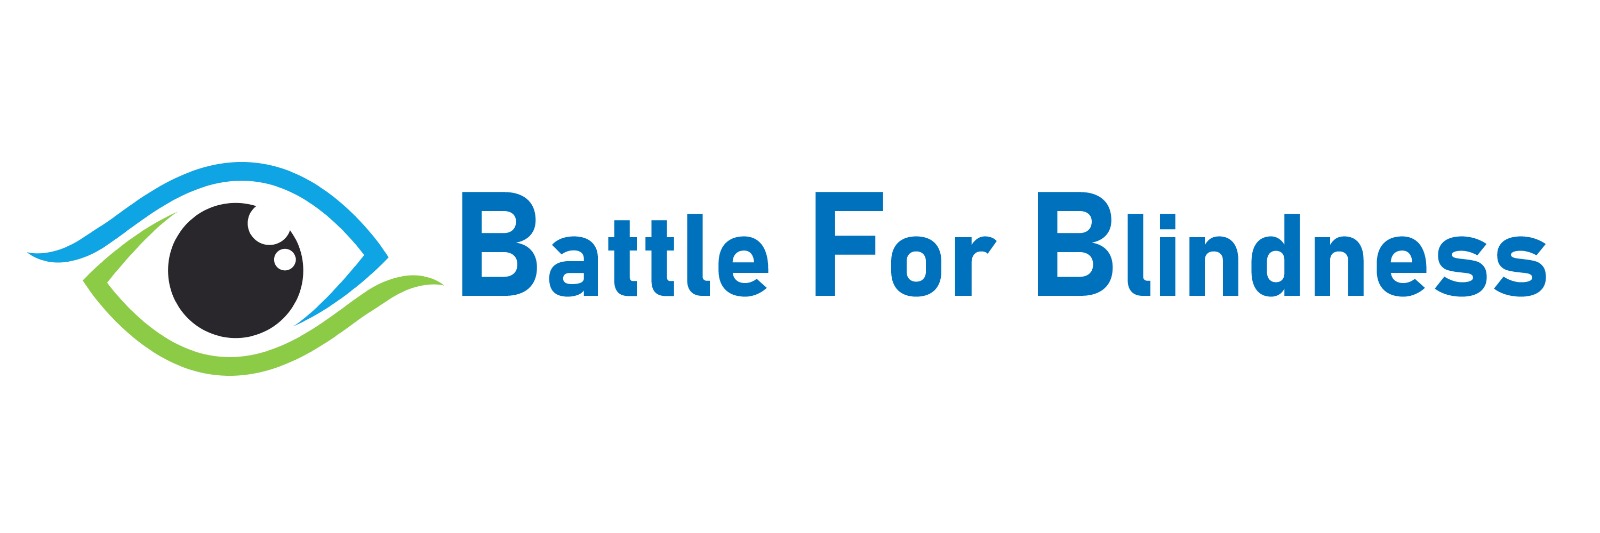 Battle for Blindness Foundation logo